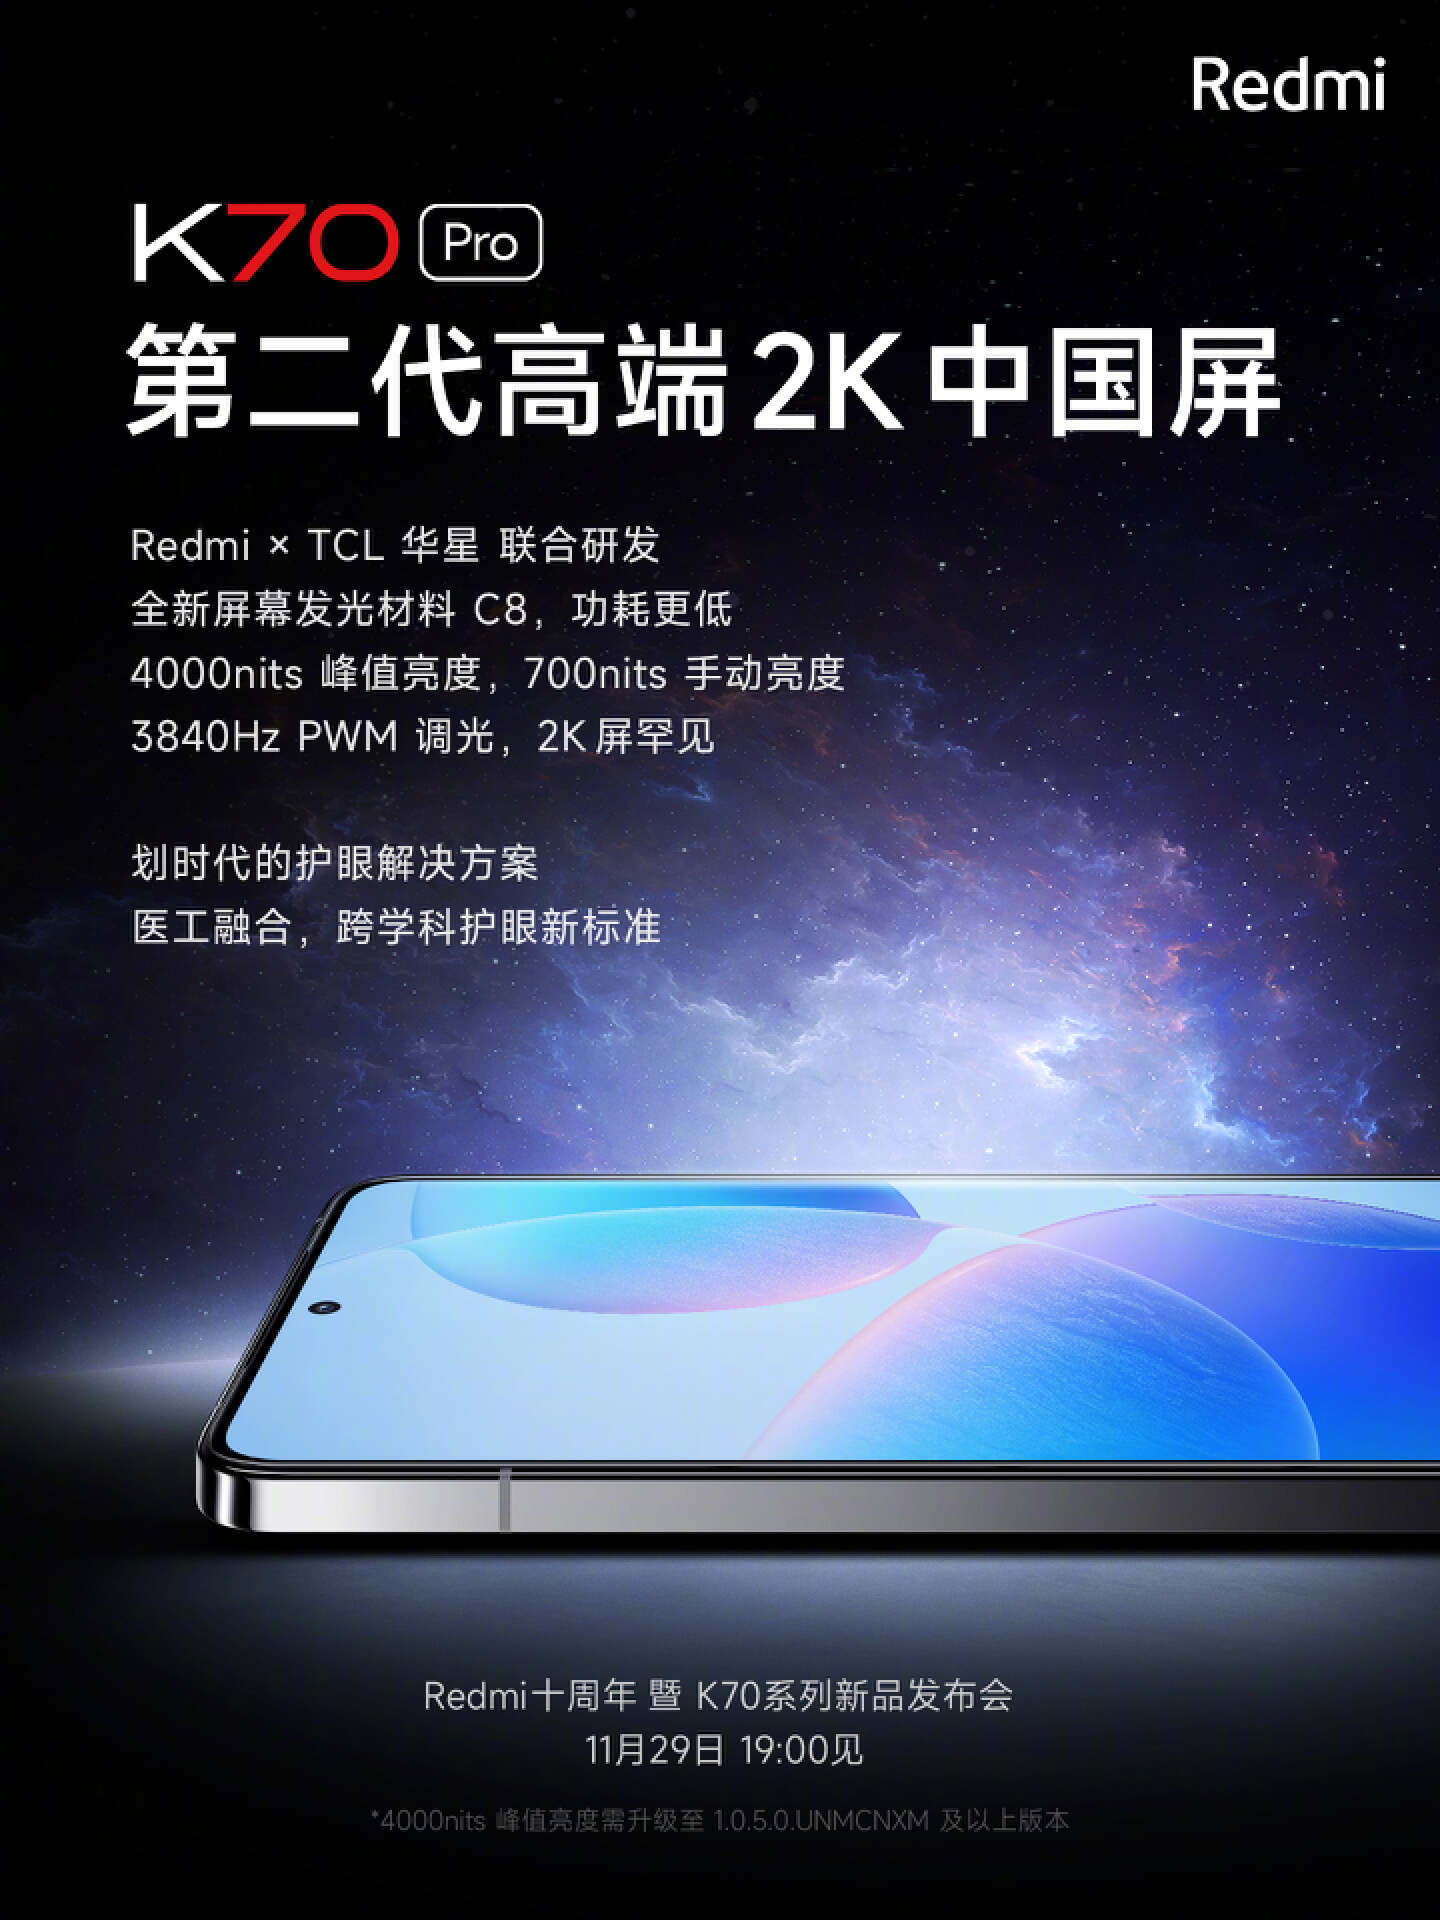 11月29日redmi红米k70系列新品发布会前瞻,三款手机配置抢先知道